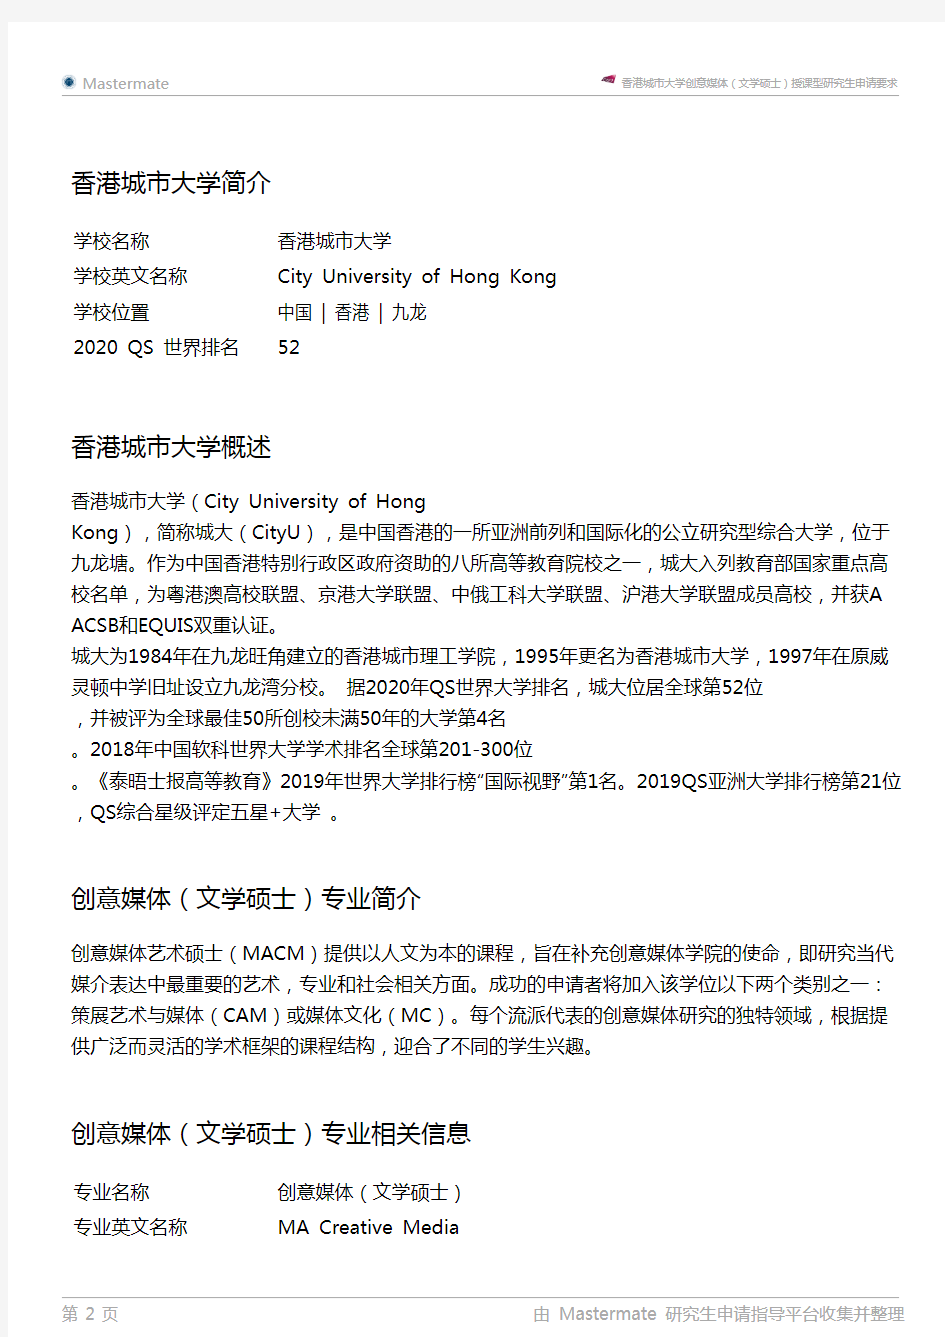 香港城市大学创意媒体(文学硕士)授课型研究生申请要求